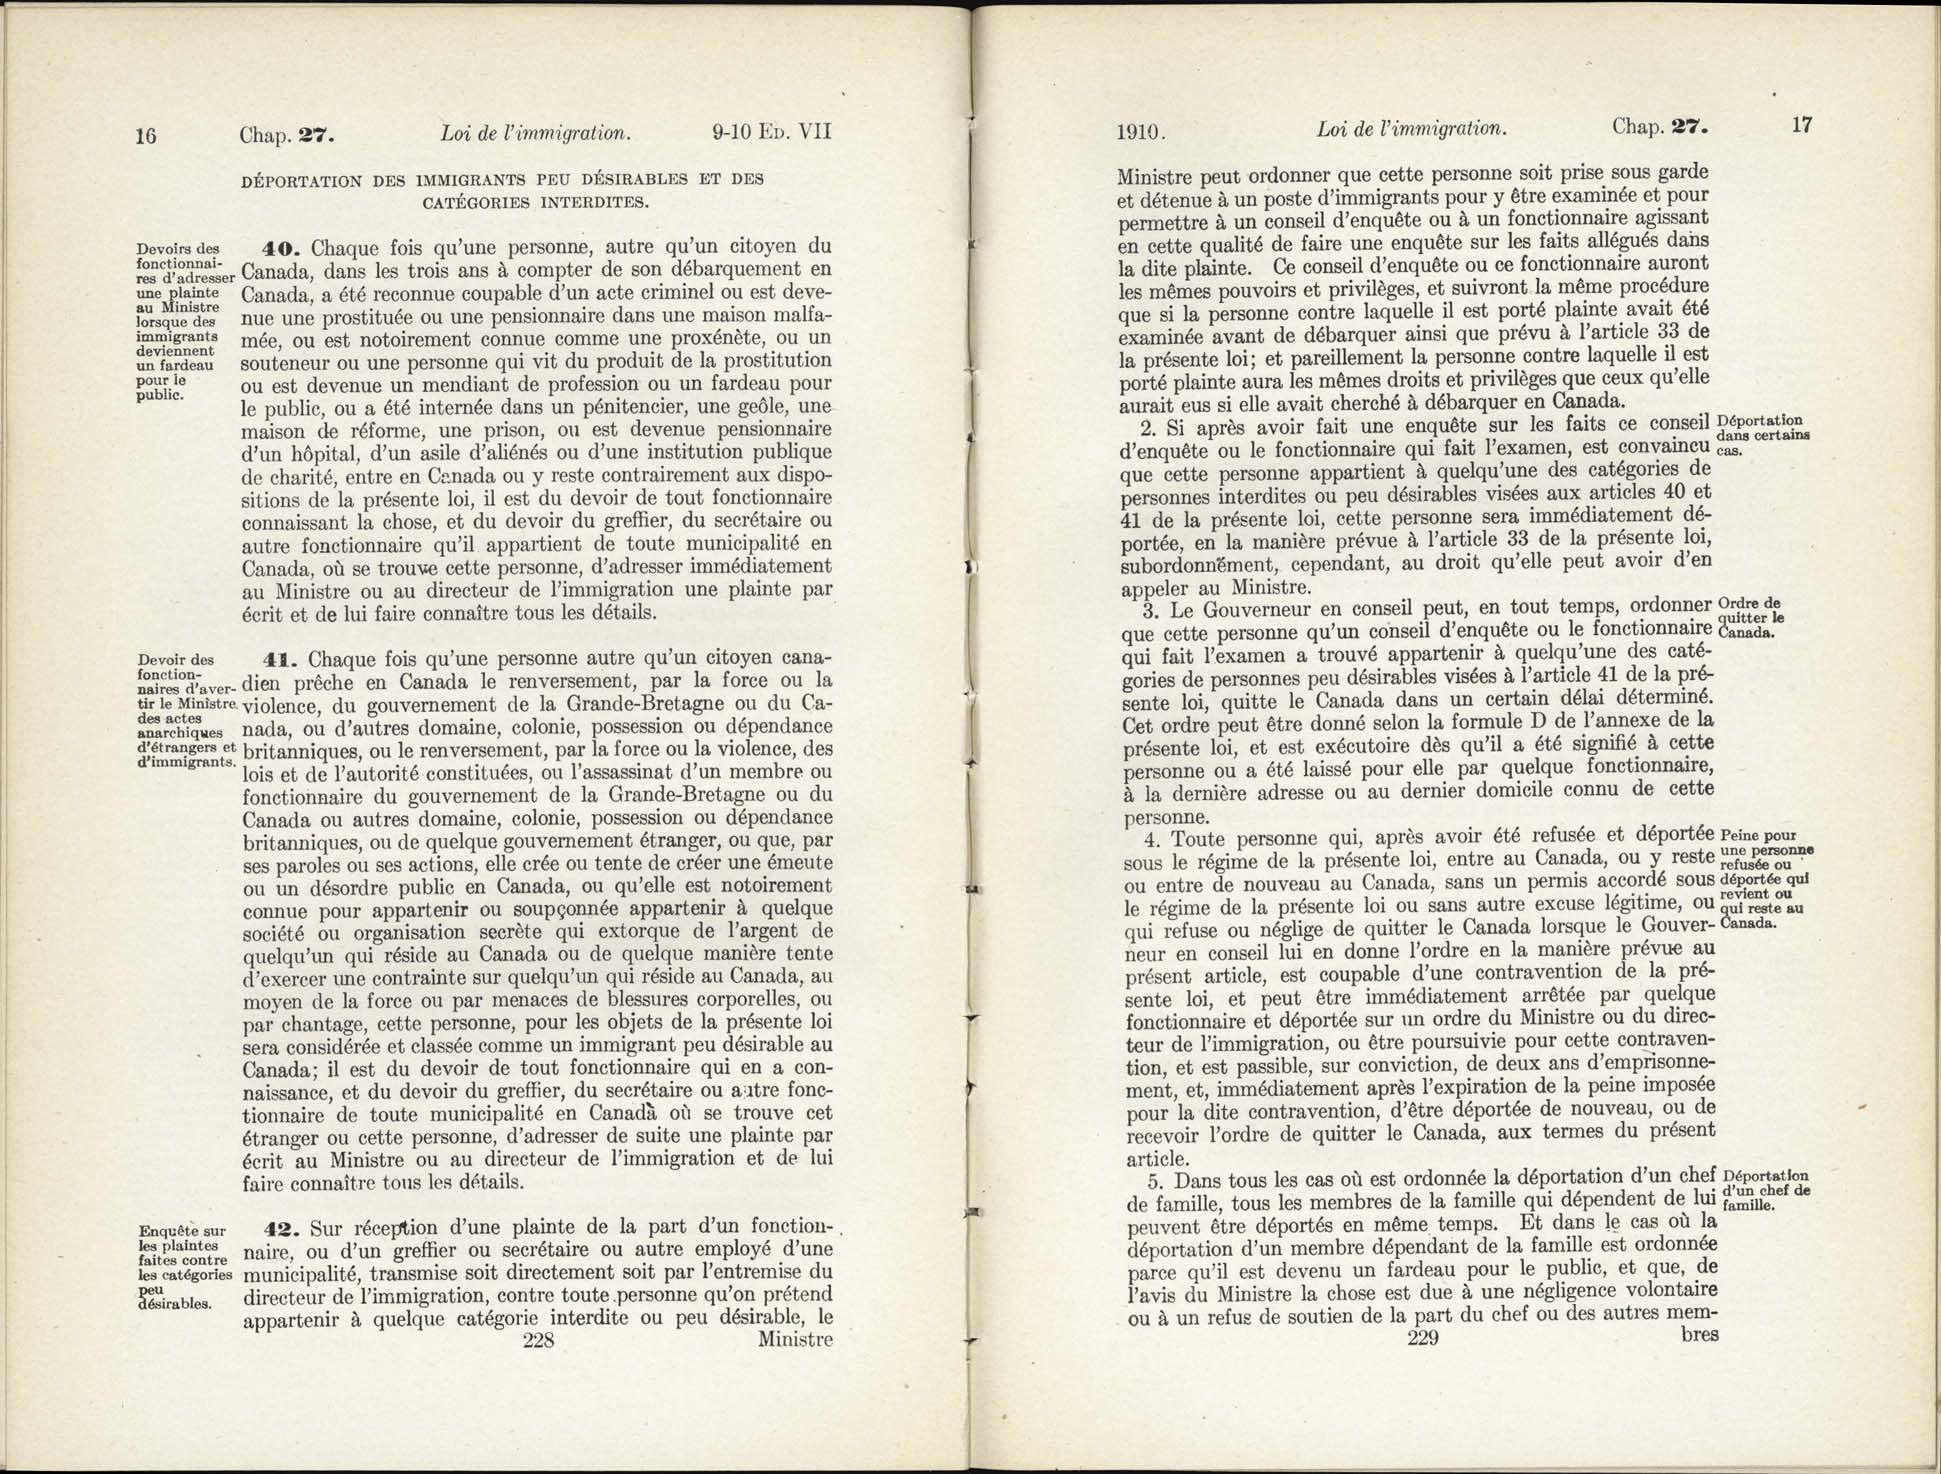 Chap 27 Page 228, 229 L’Acte d’immigration, 1910